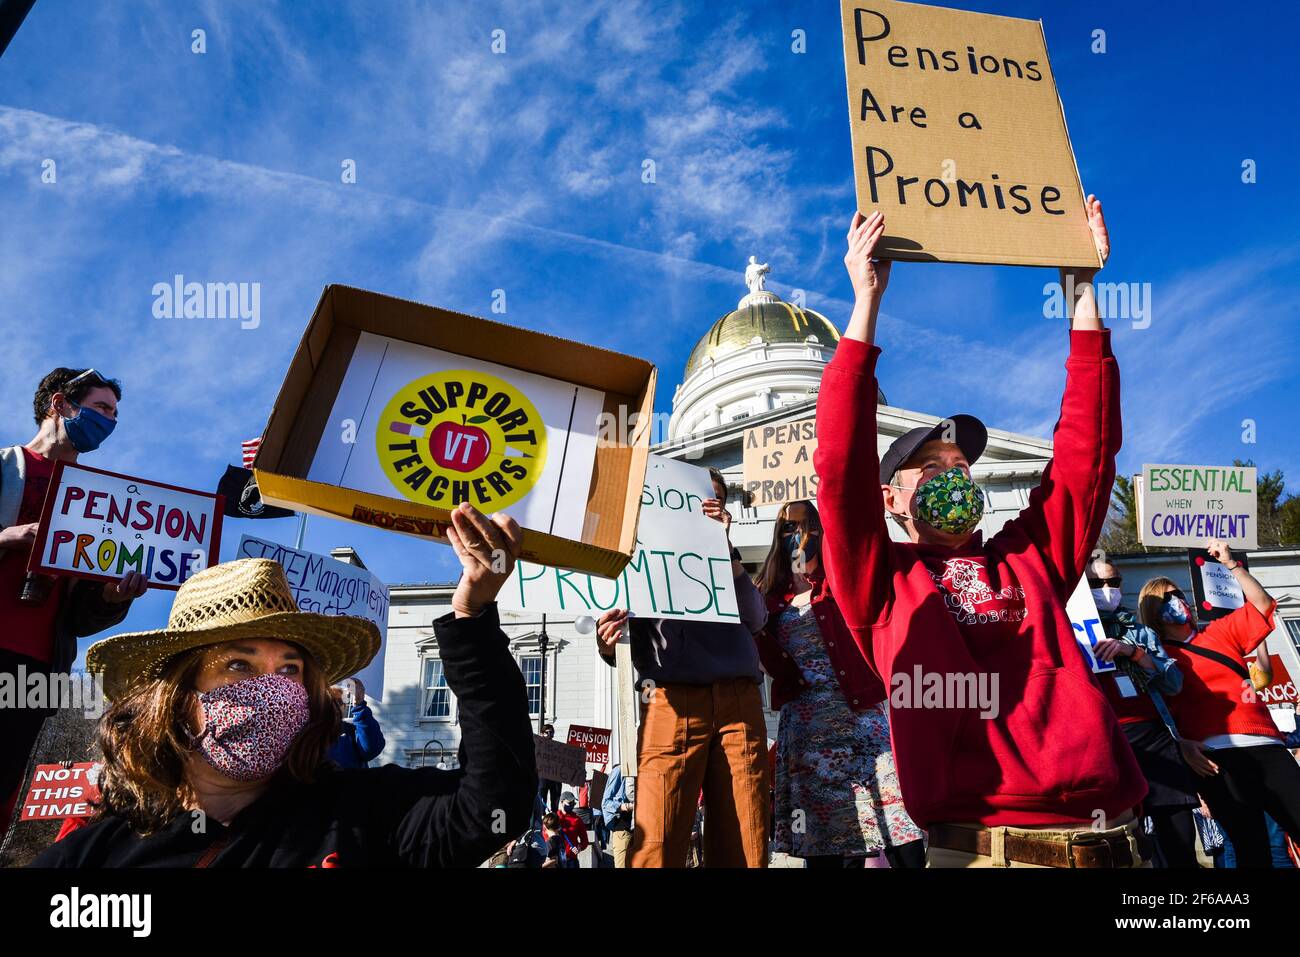 Manifestation des enseignants du Vermont pour protester contre les changements proposés dans leurs régimes de retraite publics, Vermont State House, Montpelier, VT, États-Unis. Banque D'Images